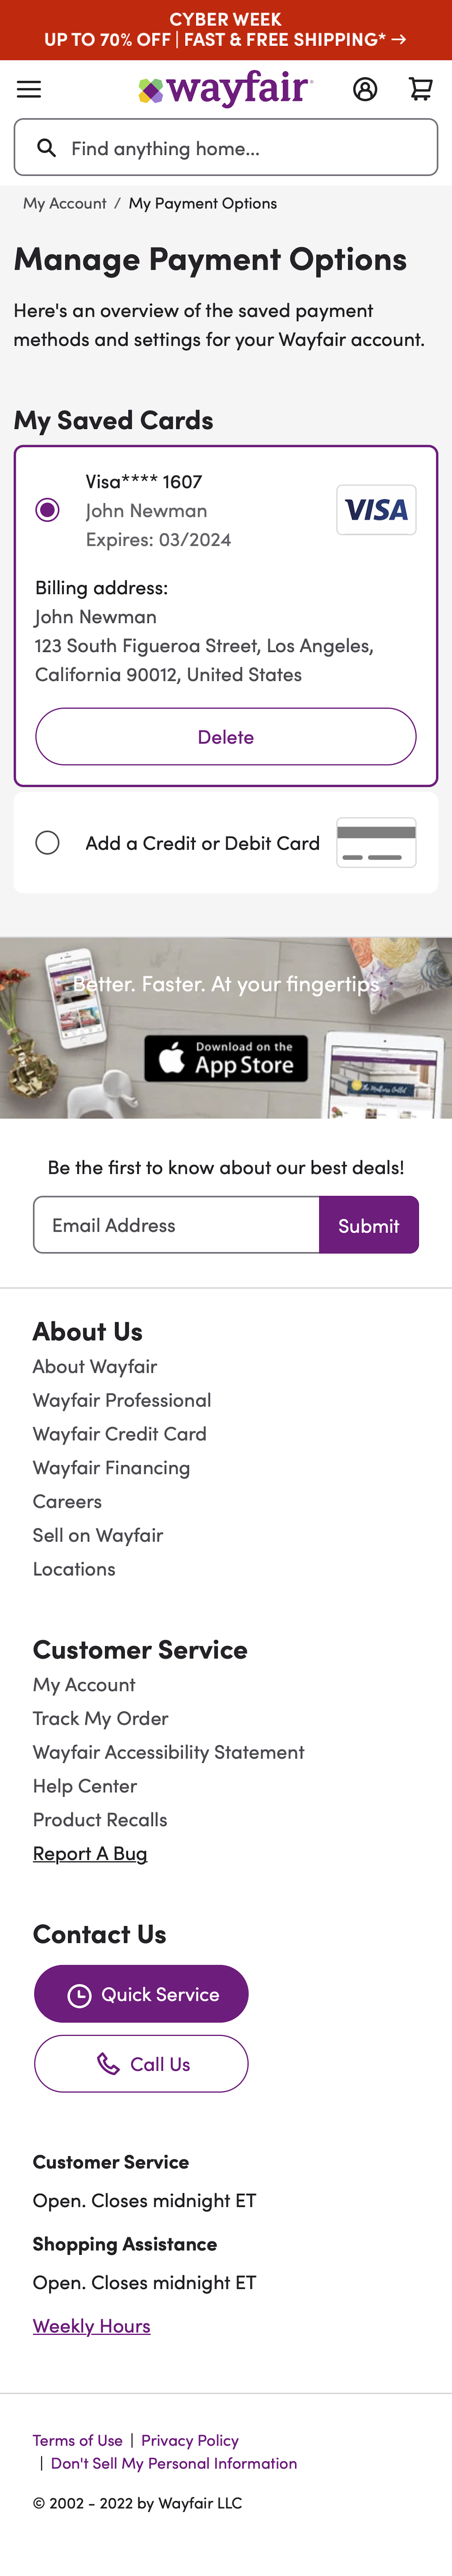 Mobile screenshot of Wayfair